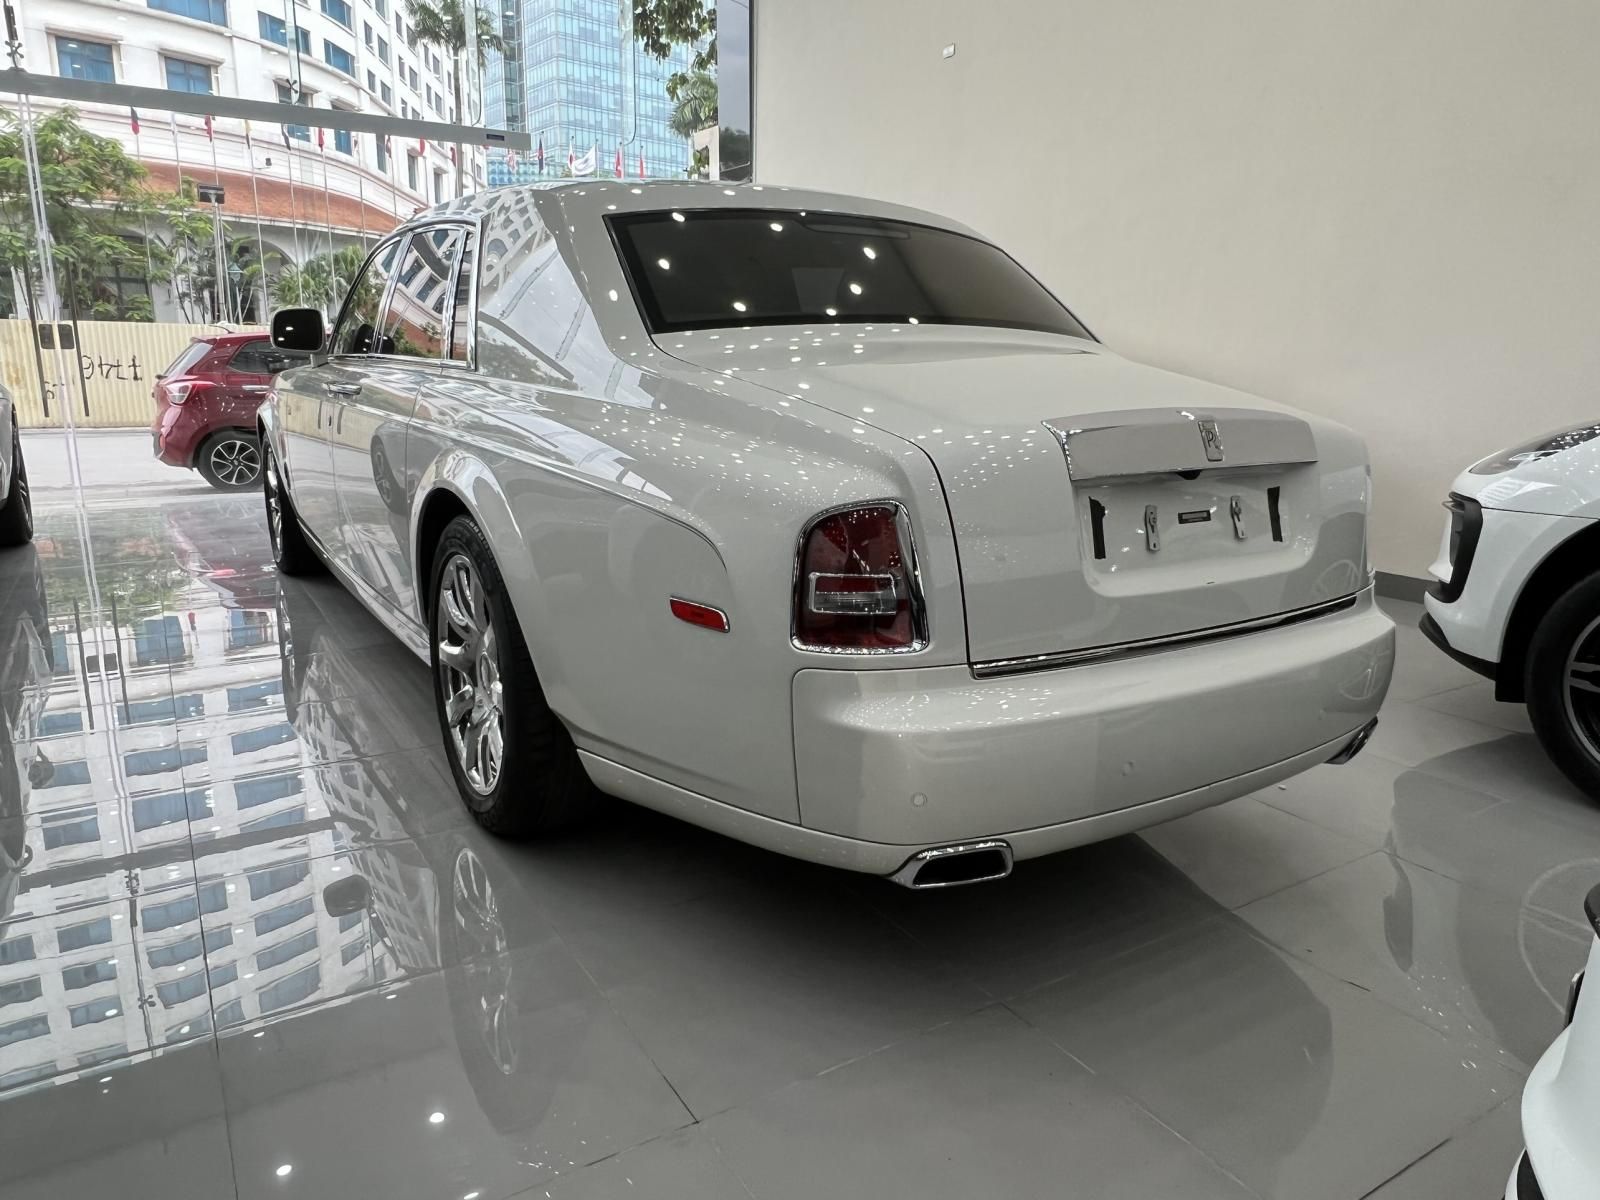 Bán xe ô tô RollsRoyce Phantom 2015 giá 28 tỷ 900 tr  2032681